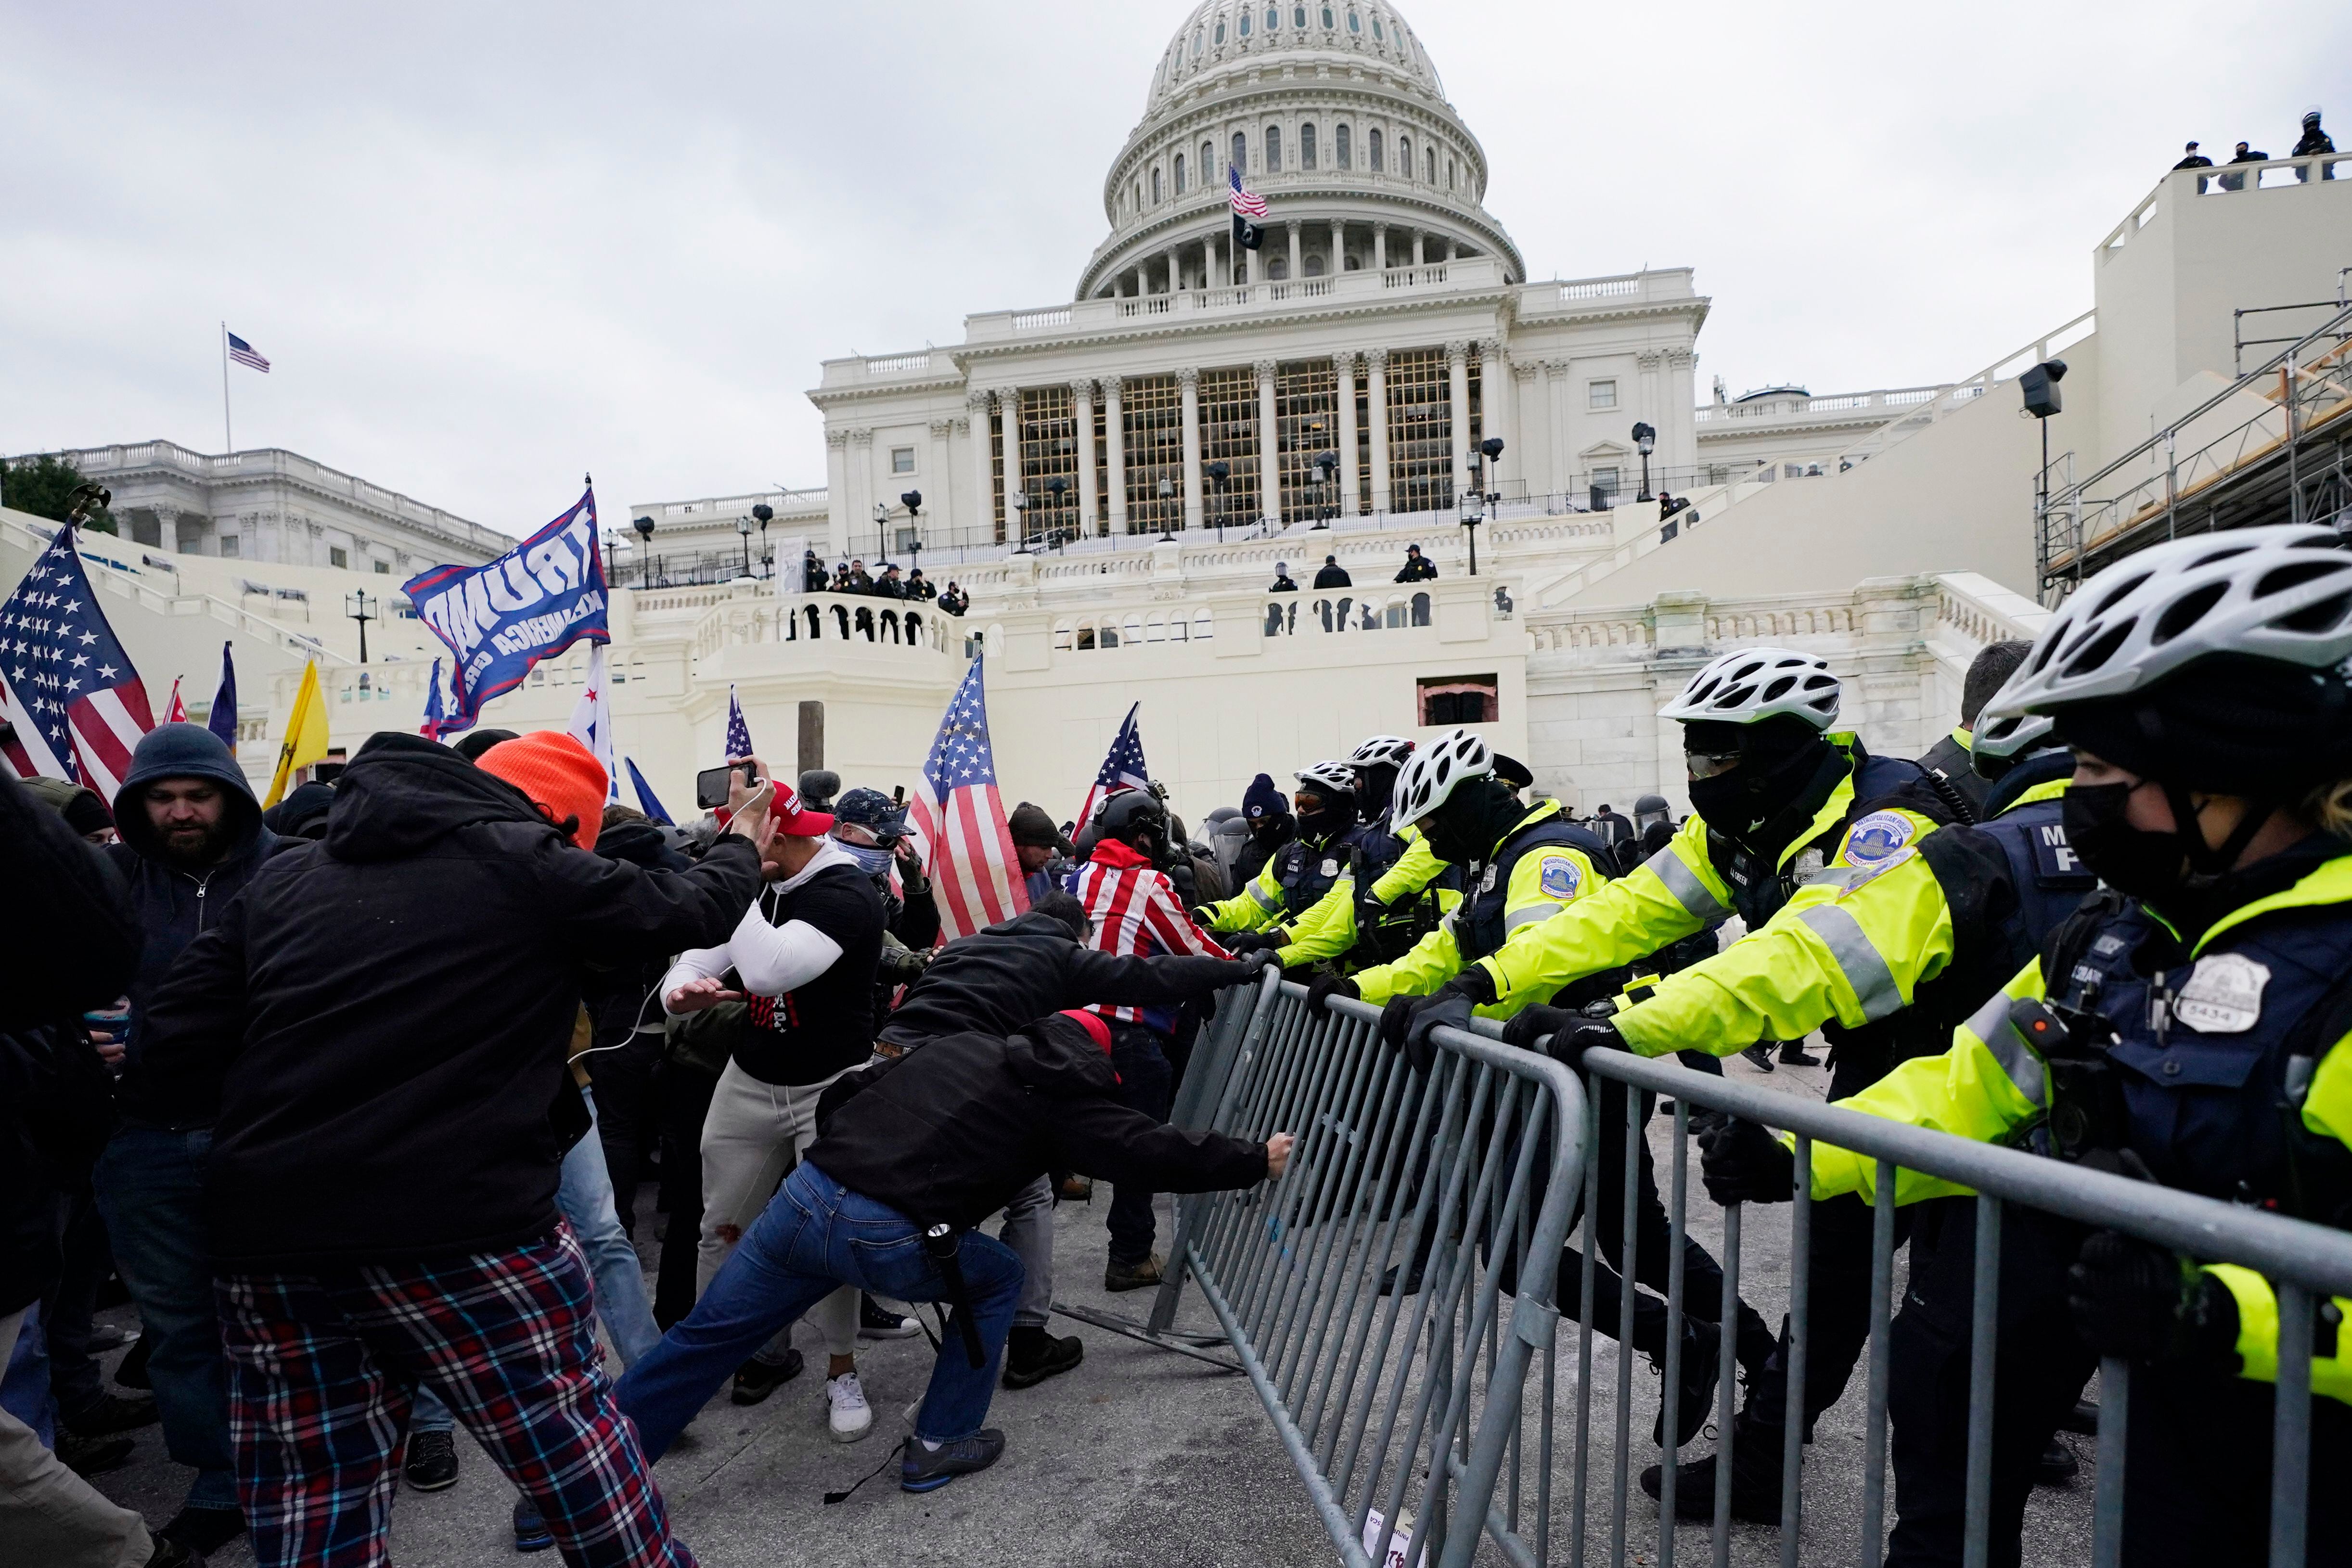 Vista del asalto al Capitolio estadounidense en Washington el 6 de enero de 2021 (Foto AP/Julio Cortez)